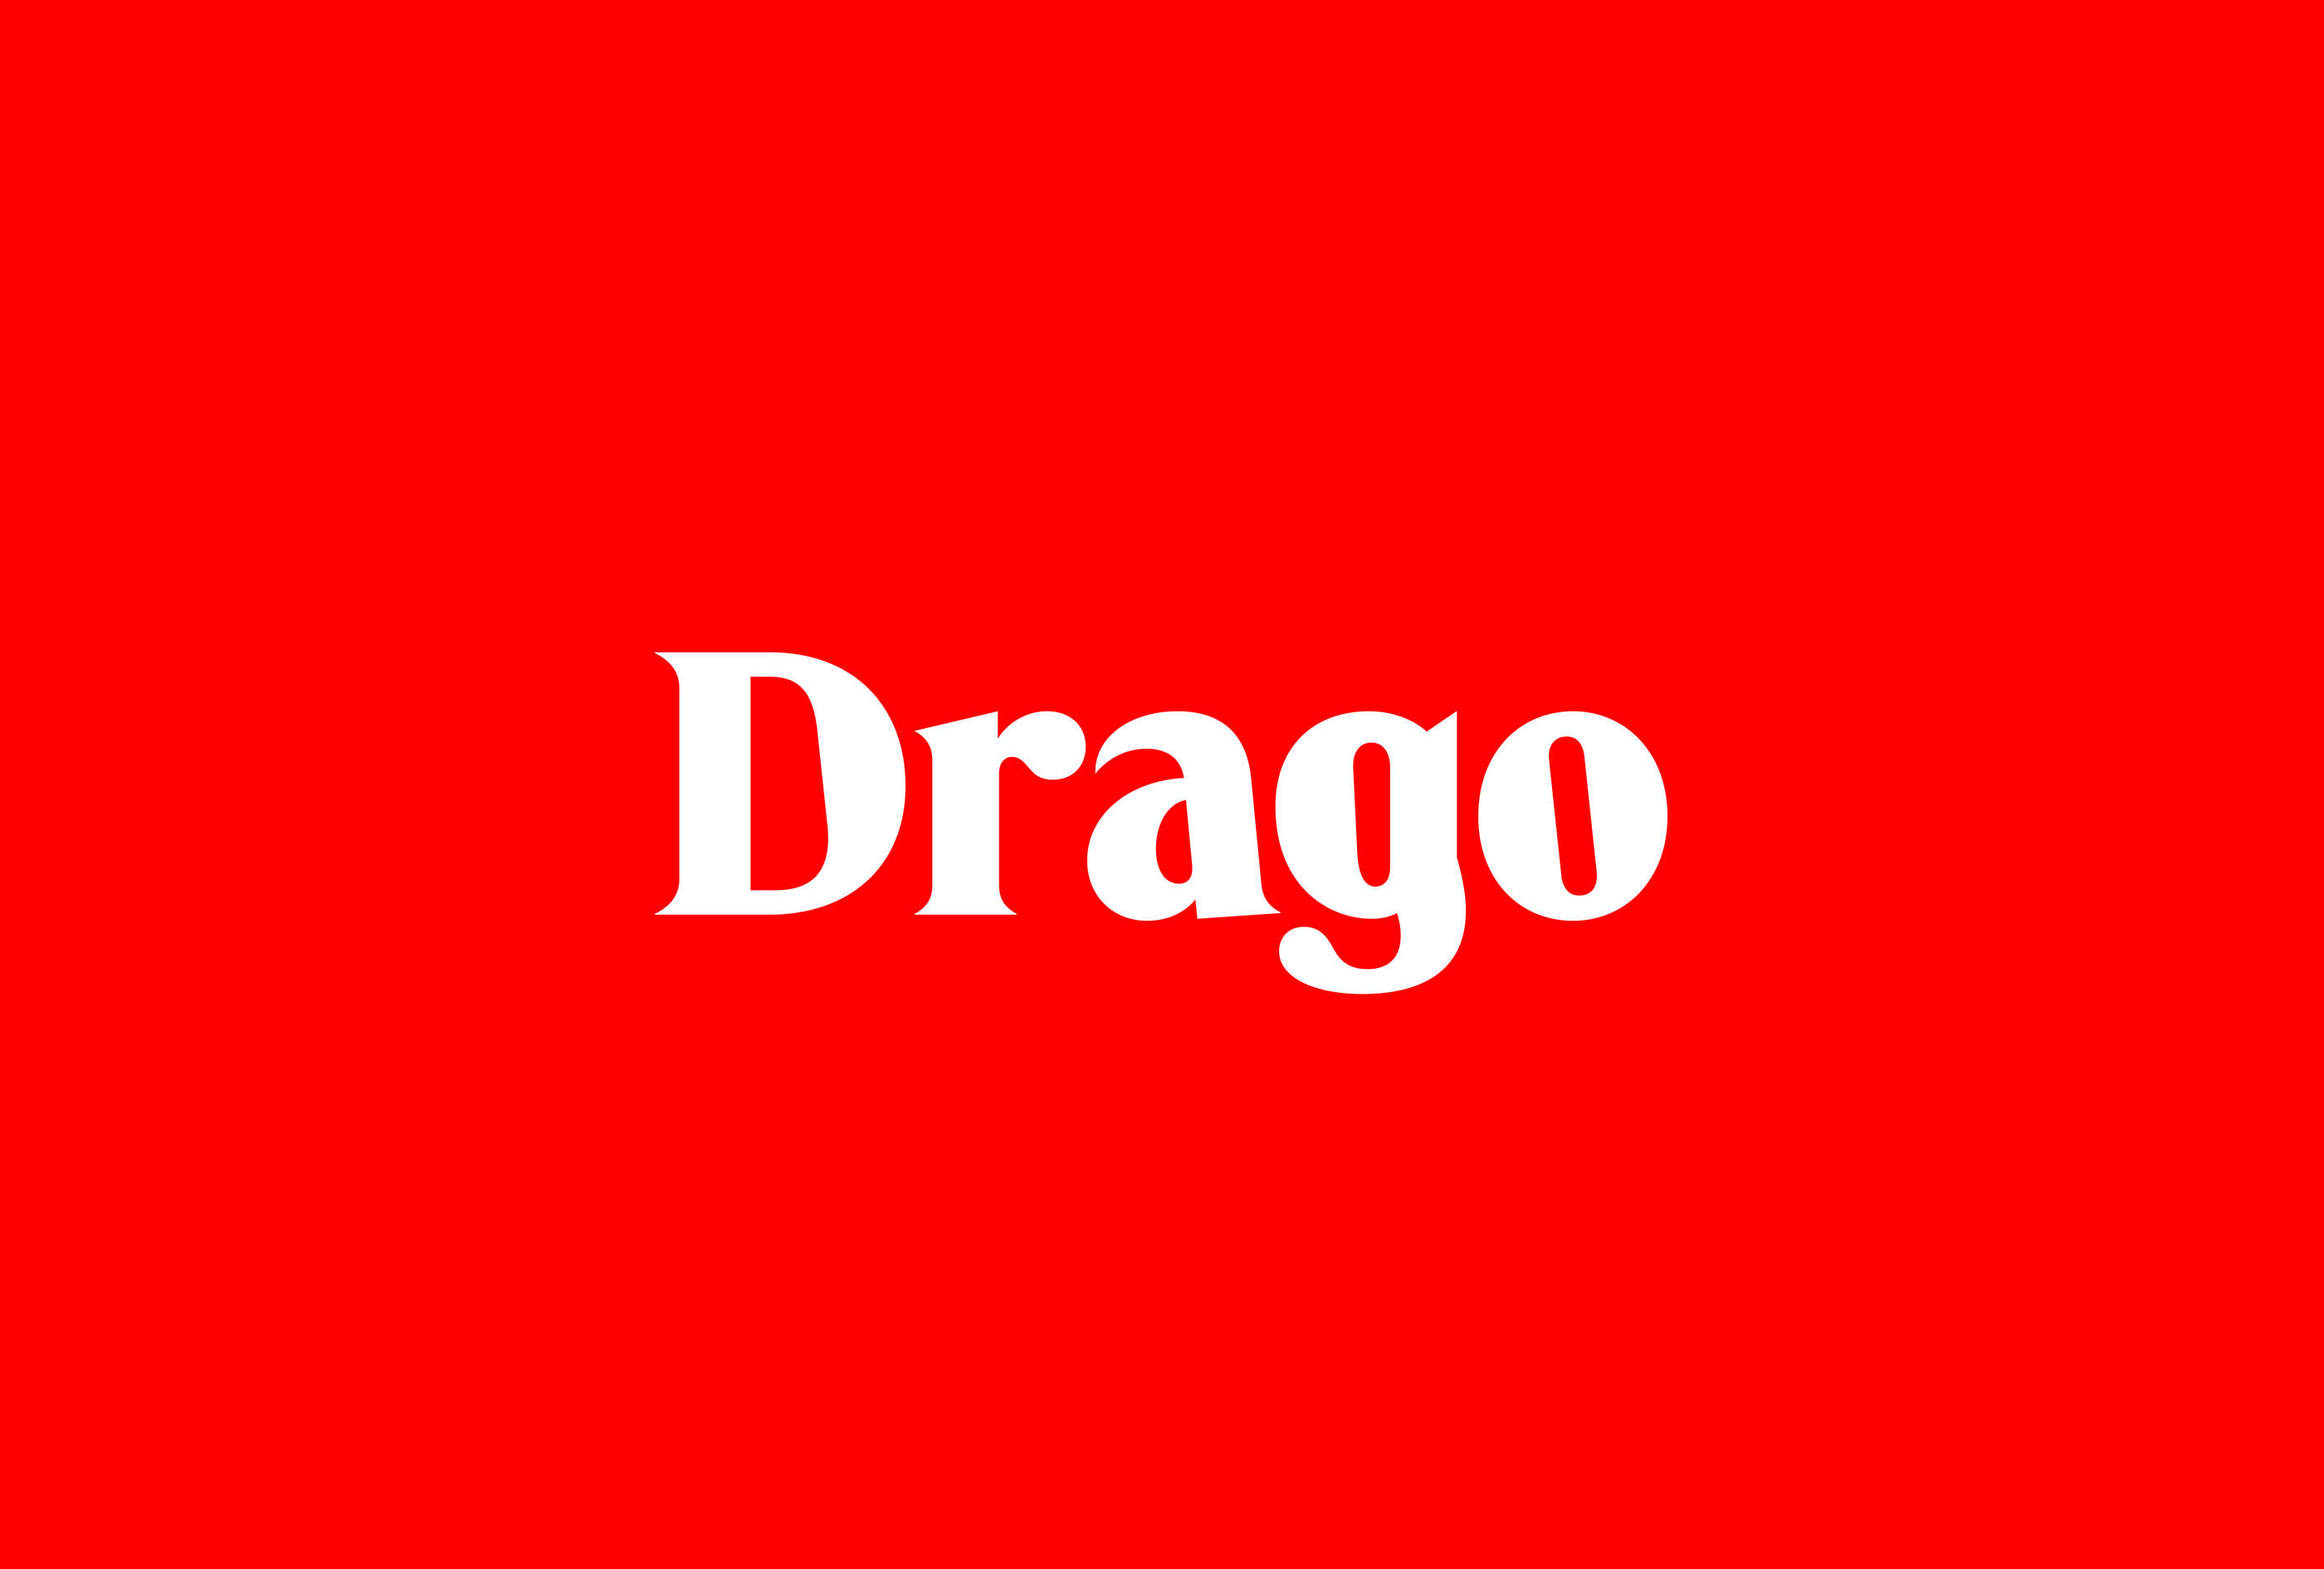 Beispiel einer F37 Drago-Schriftart